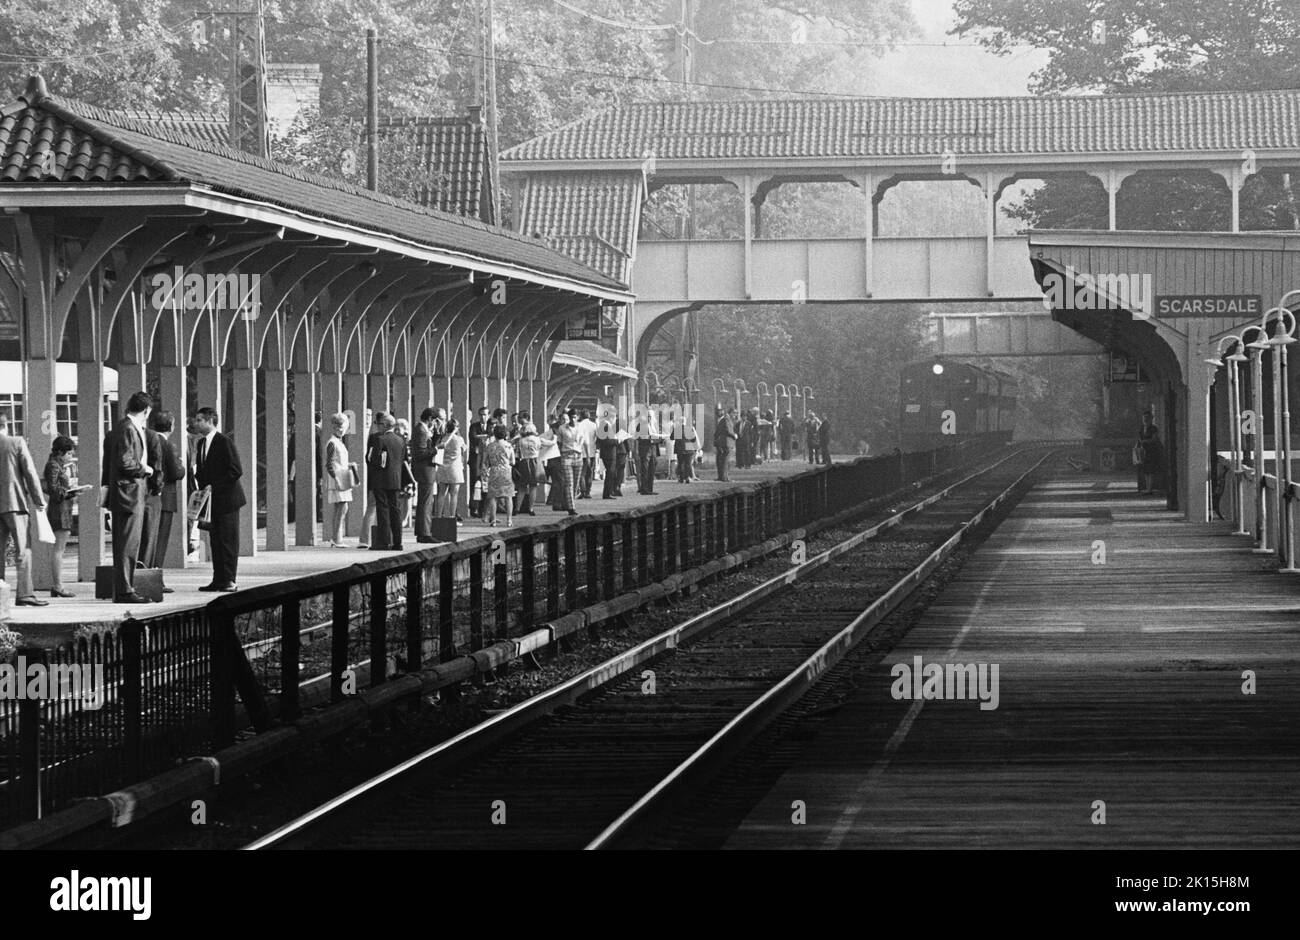 Penn Central de trenes que viajan en espera en Scarsdale, Nueva York, alrededor de 1975. Foto de stock